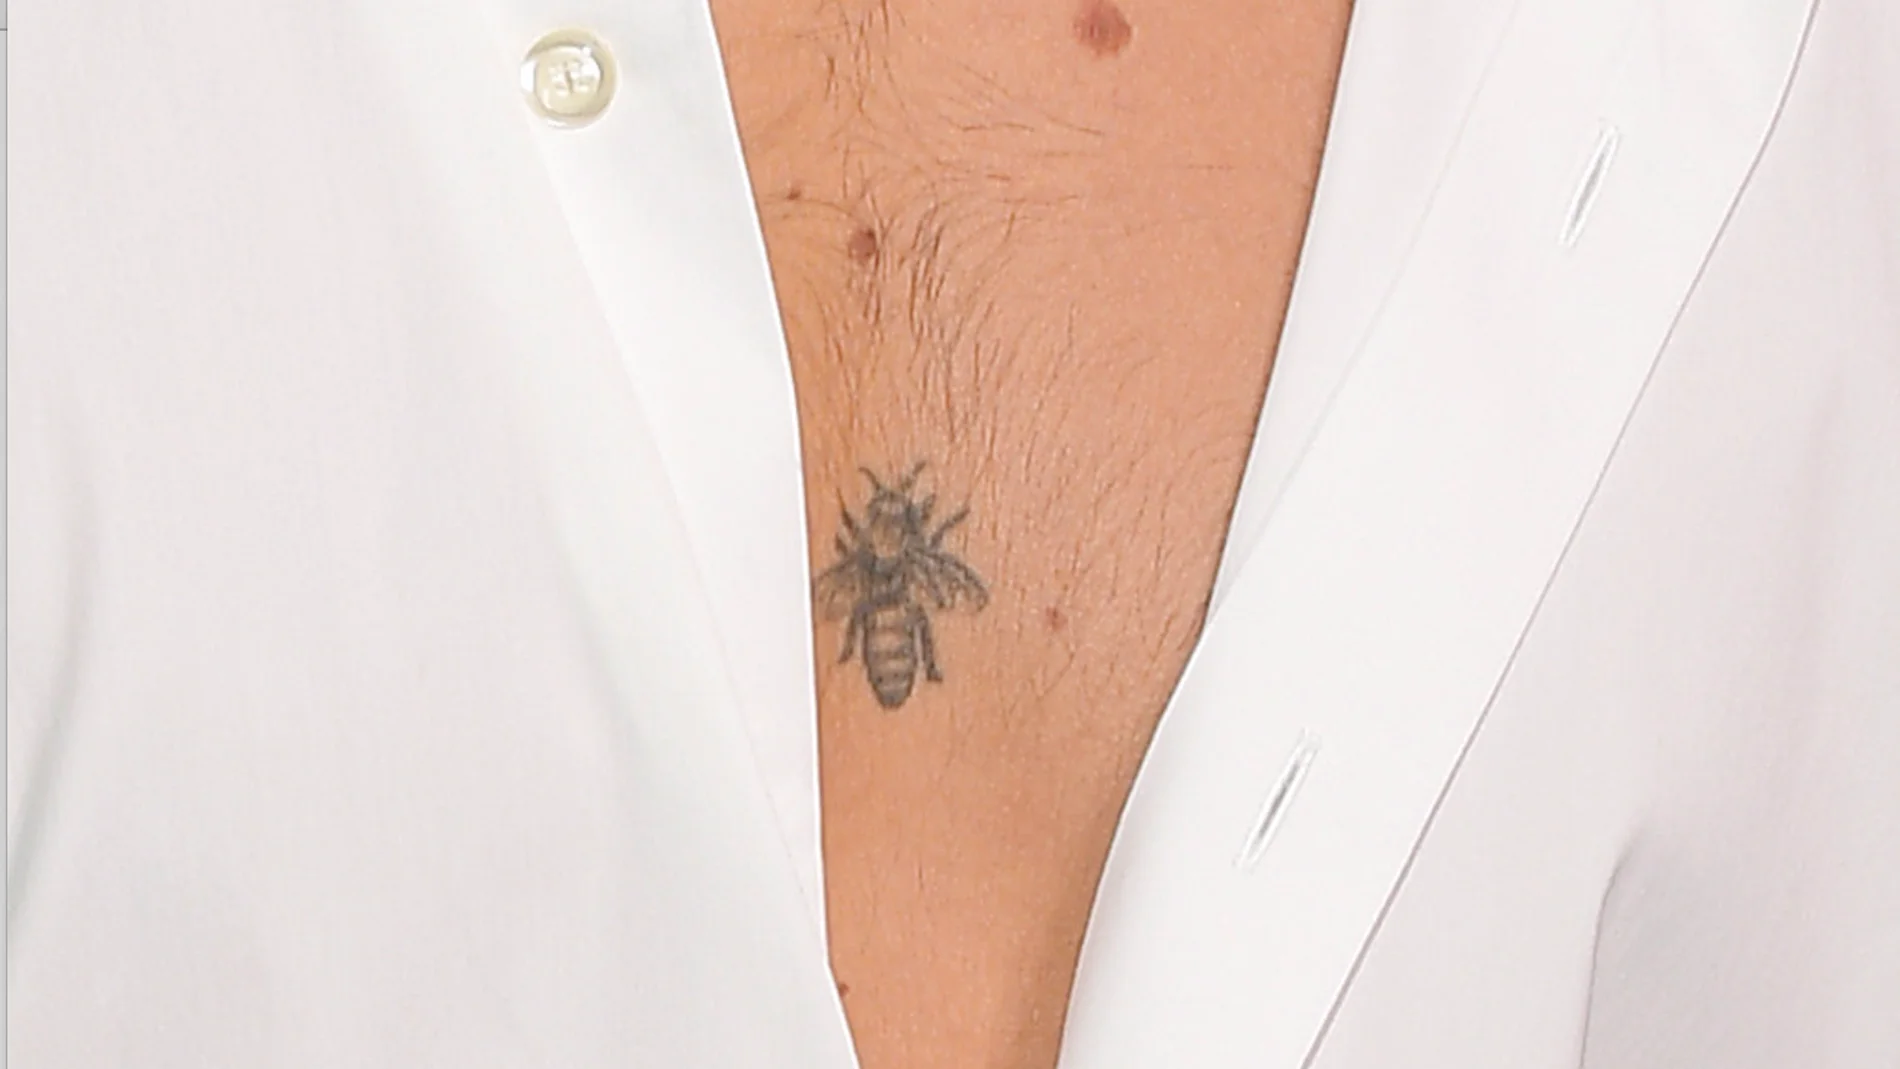 ¿Qué famoso cantante tiene tatuada una abeja en el pecho?